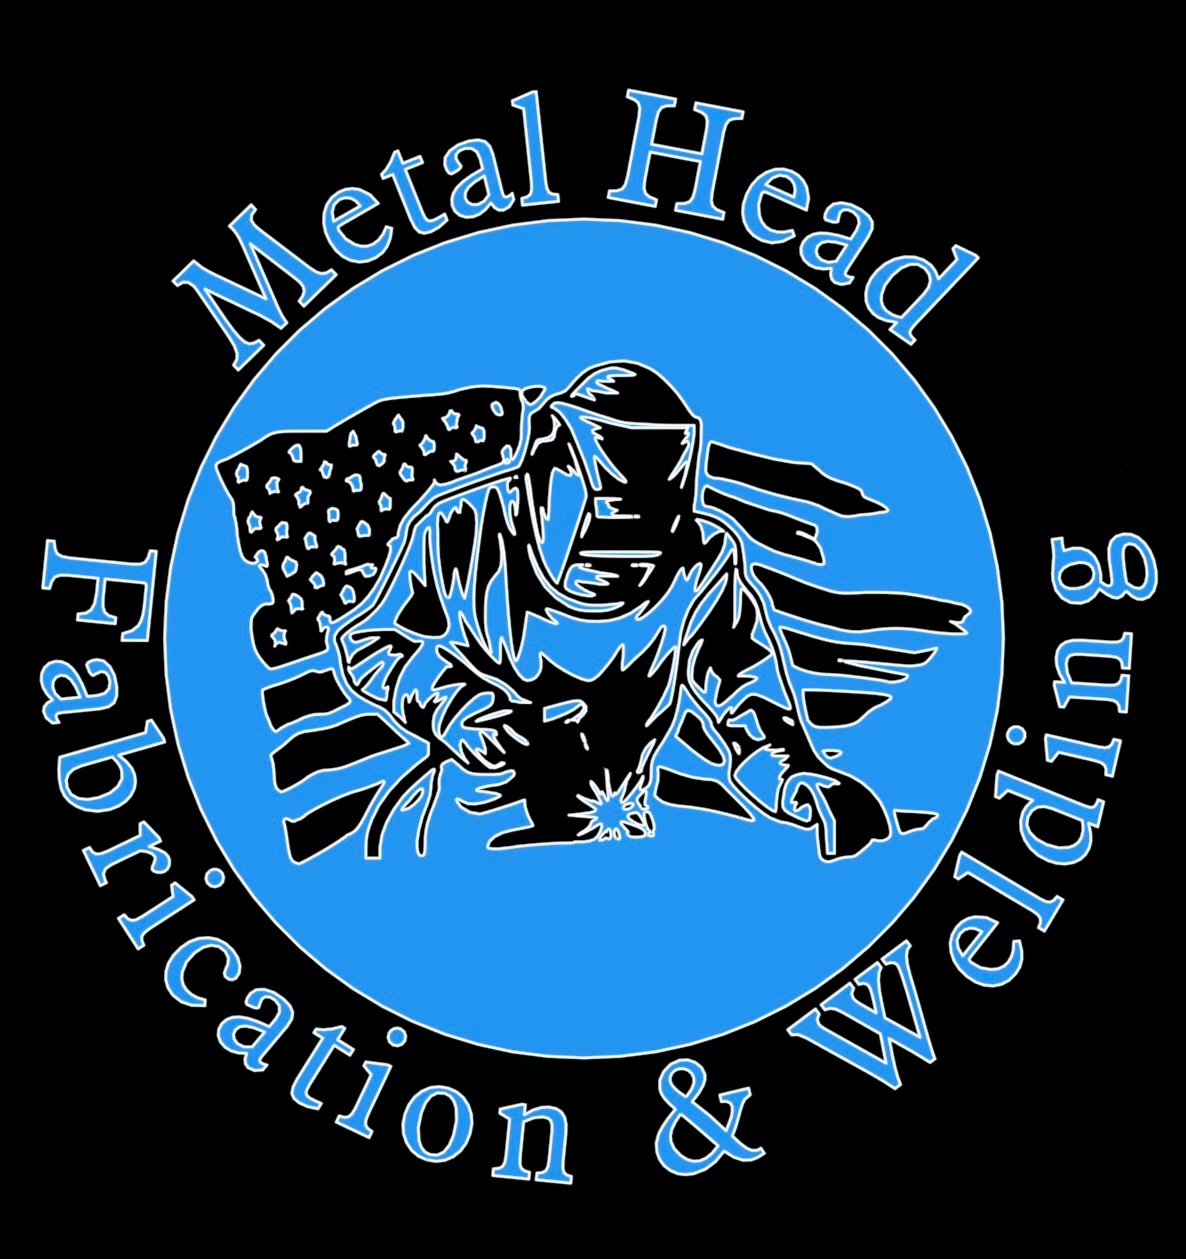 Metal Head Fabrication & Welding Logo